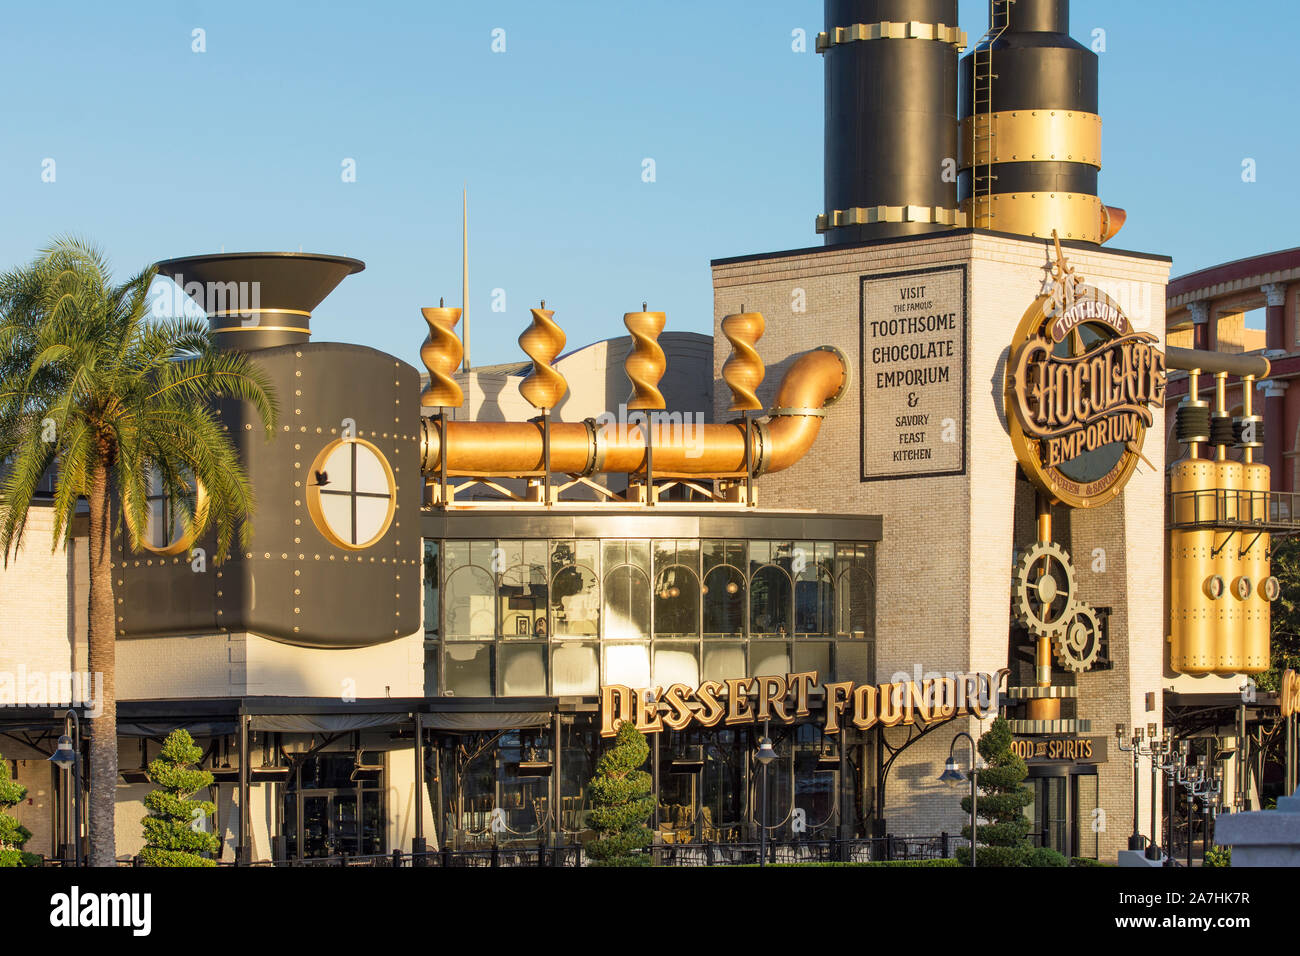 El Chocolate Toothsome Emporium & Fiesta sabrosa cocina, Universal Studios Resort, Orlando, Florida, EE.UU. Foto de stock